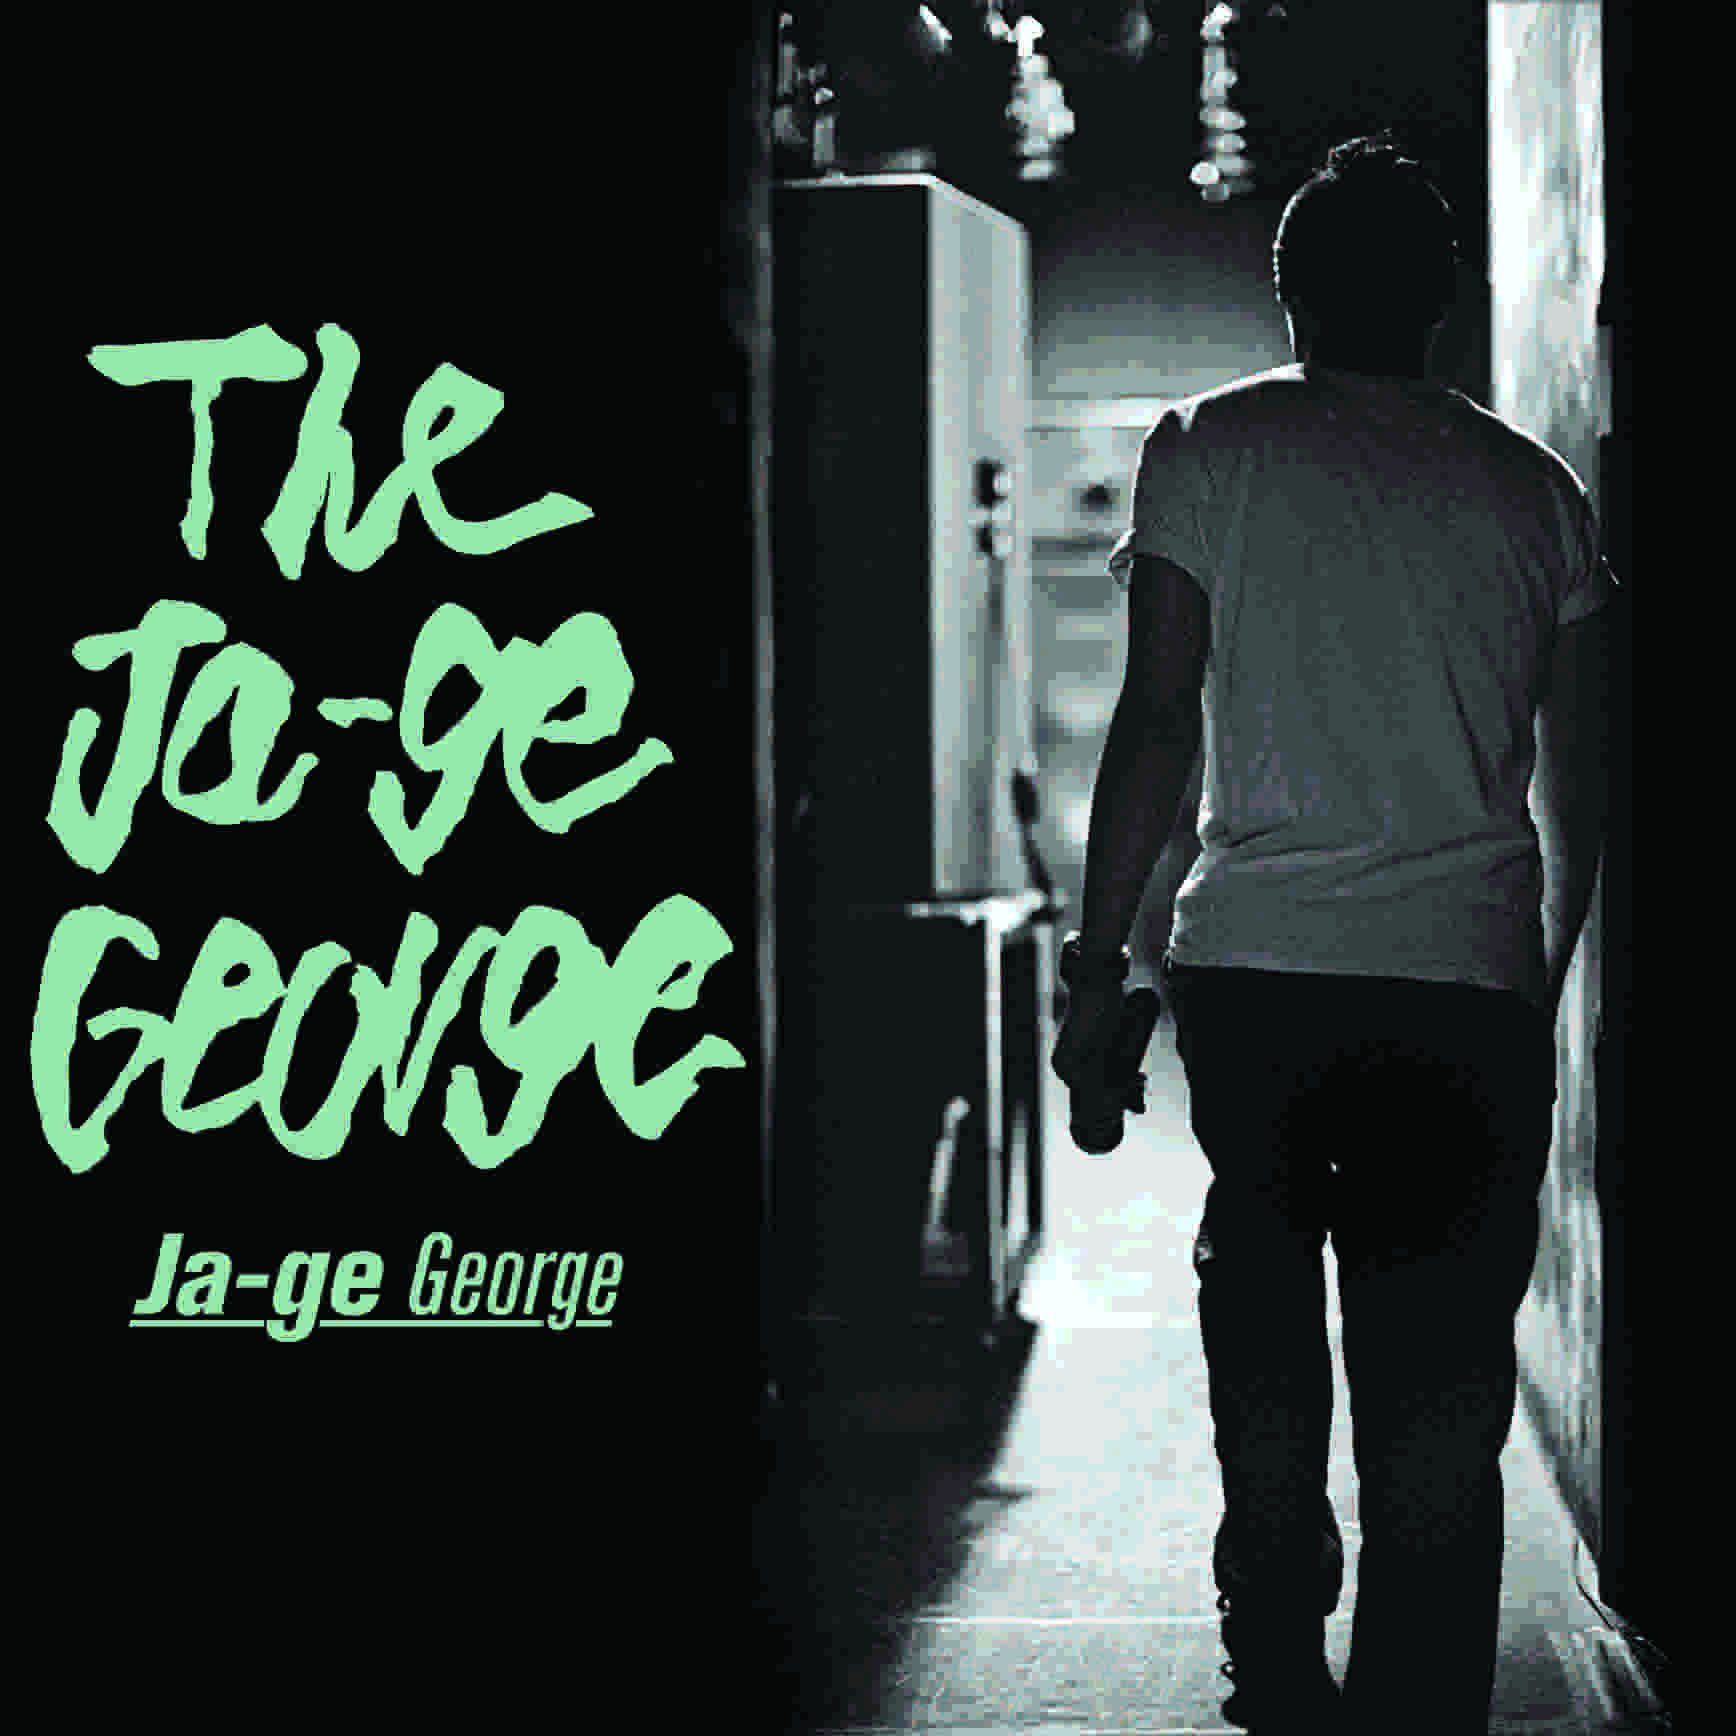 ジャーゲジョージ『The Ja-ge George』